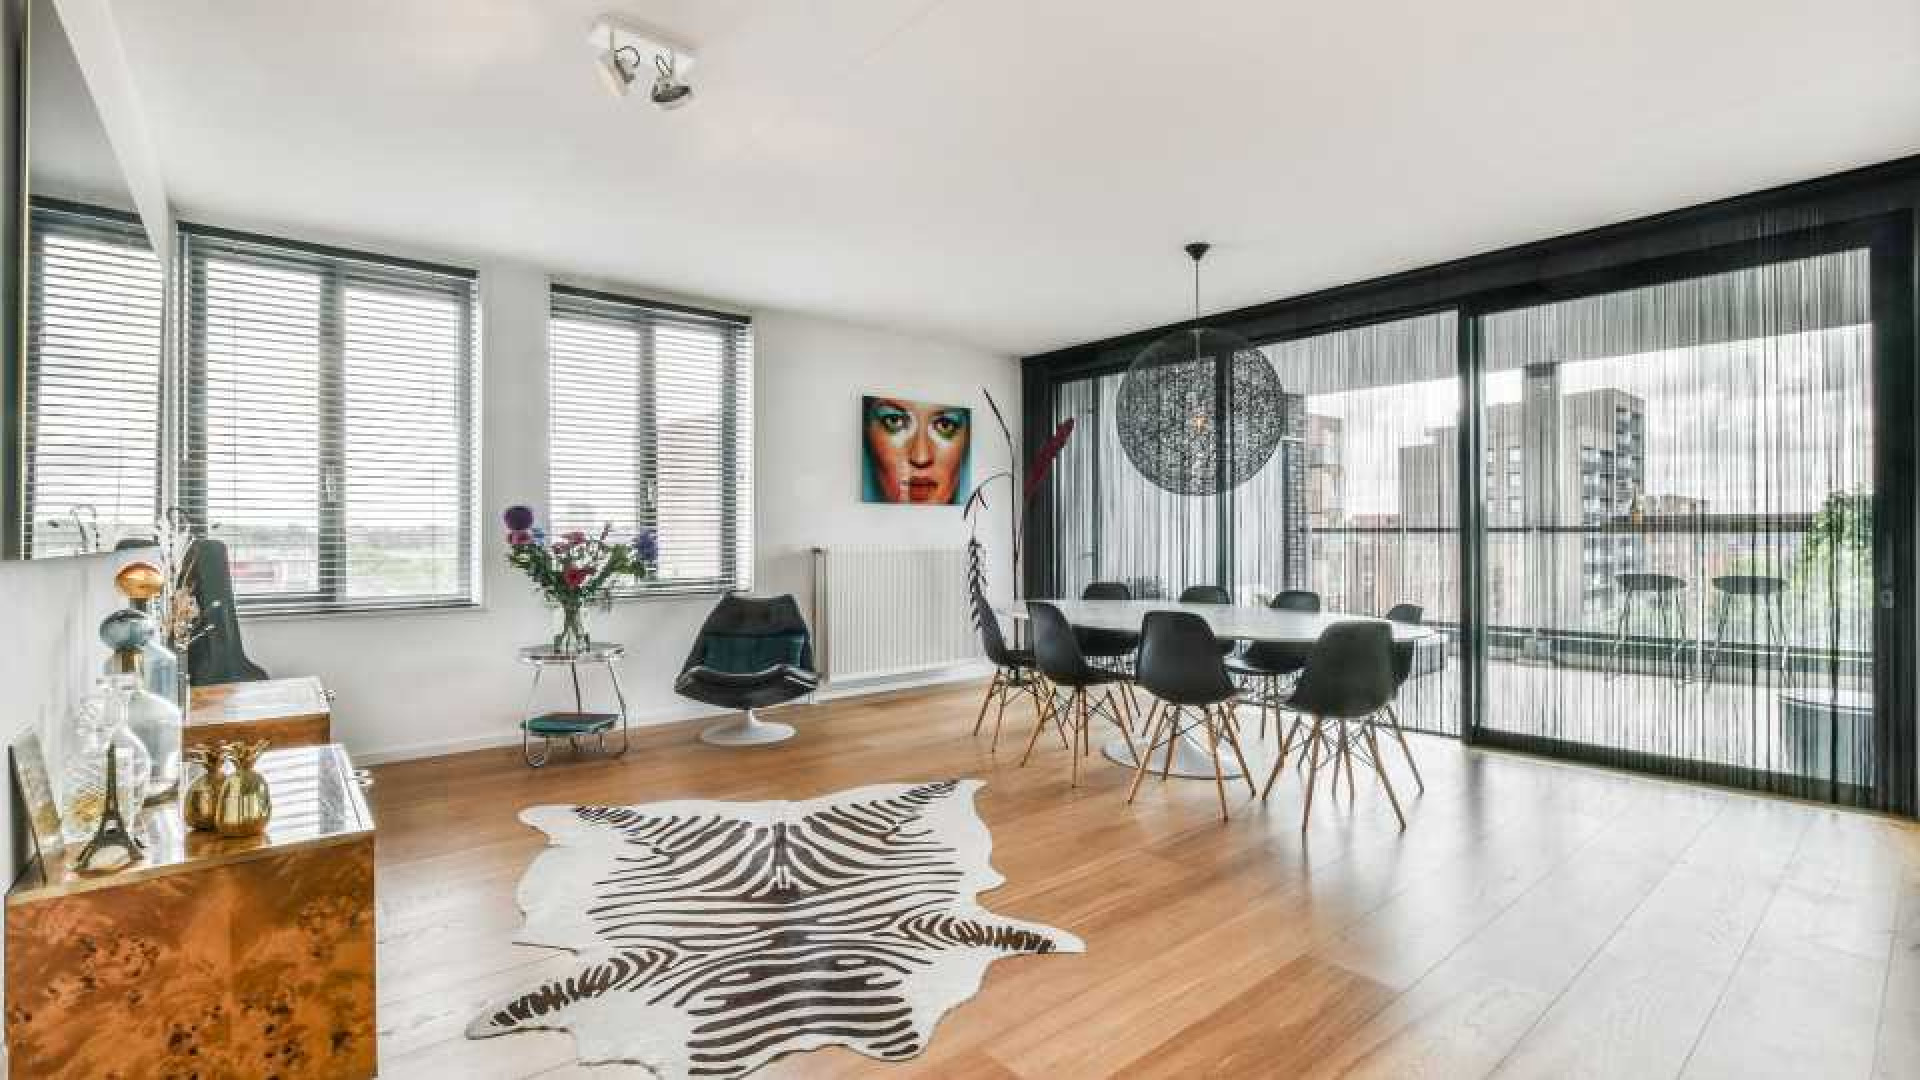 Vriendin Guus Meeuwis maakt financiele klapper met verkoop van haar appartement. Zie foto's